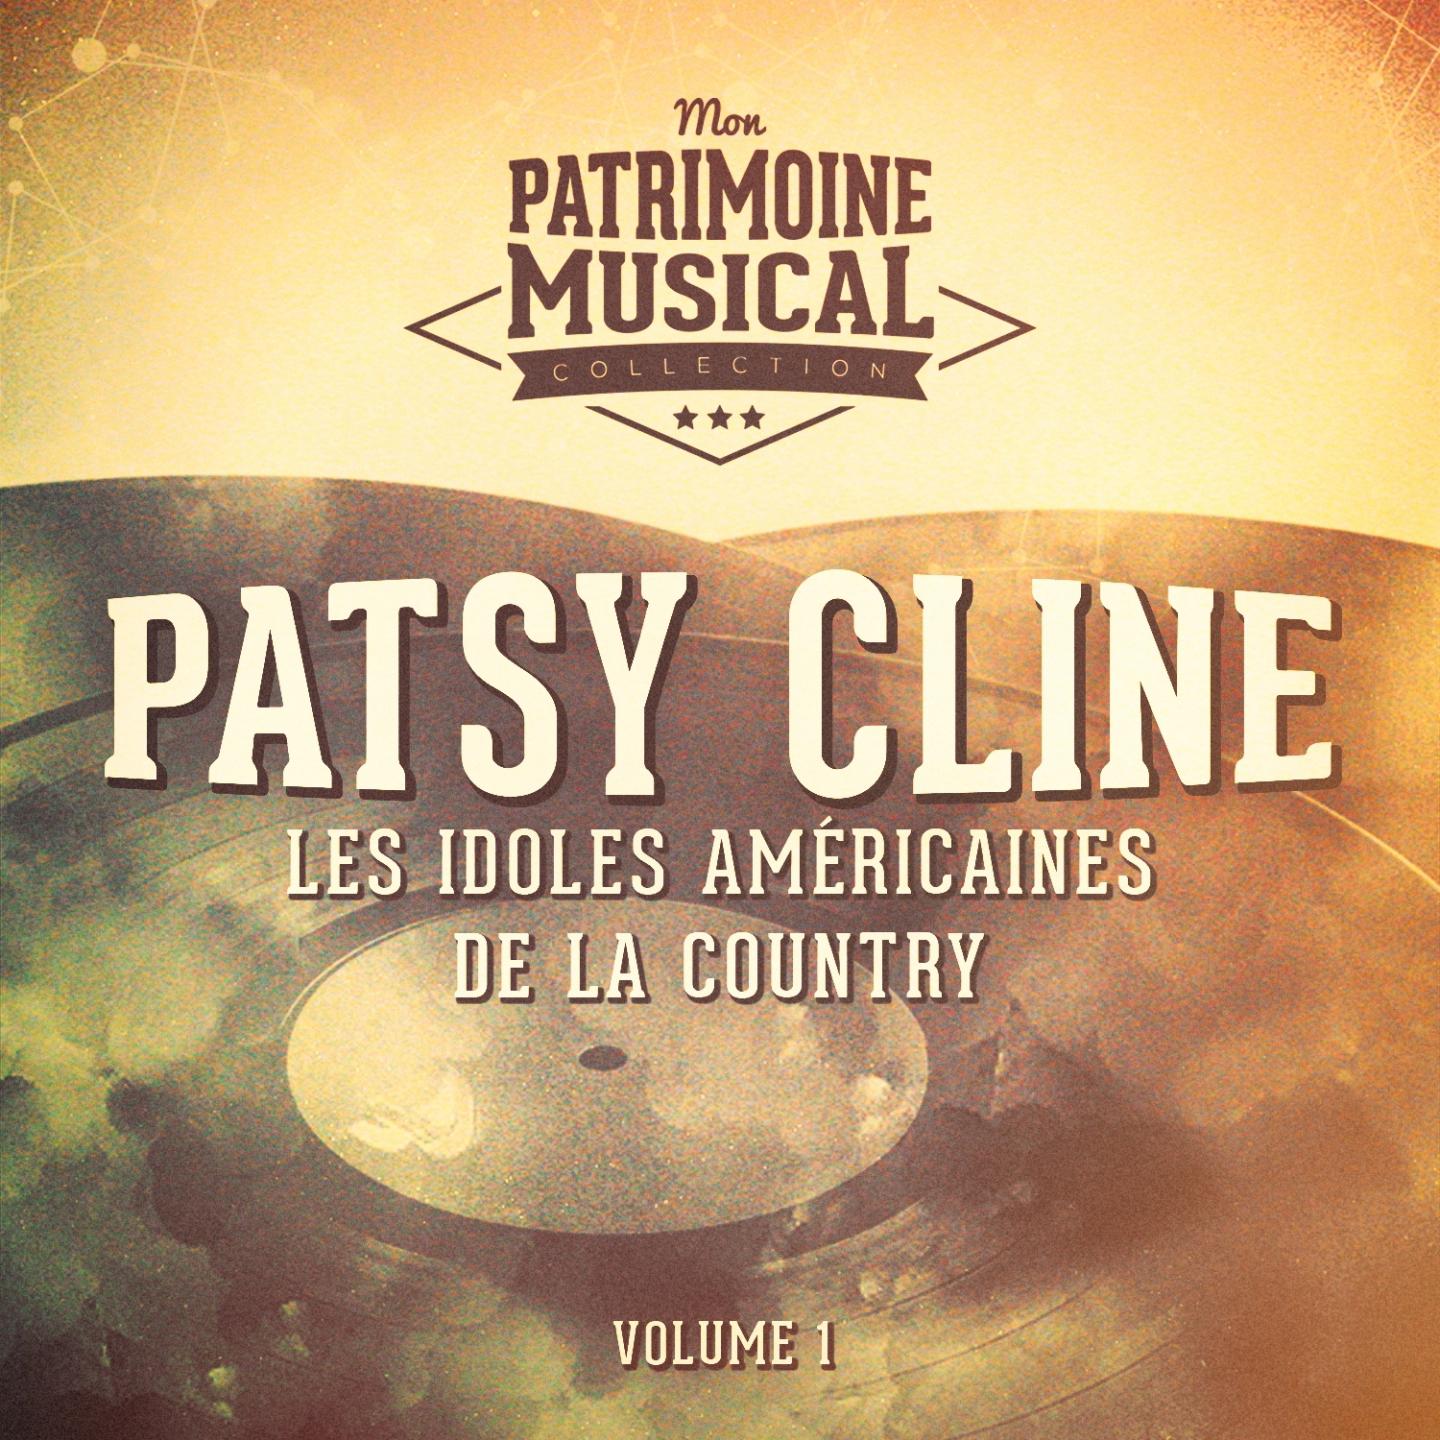 Les idoles américaines de la country : Patsy Cline, Vol. 1